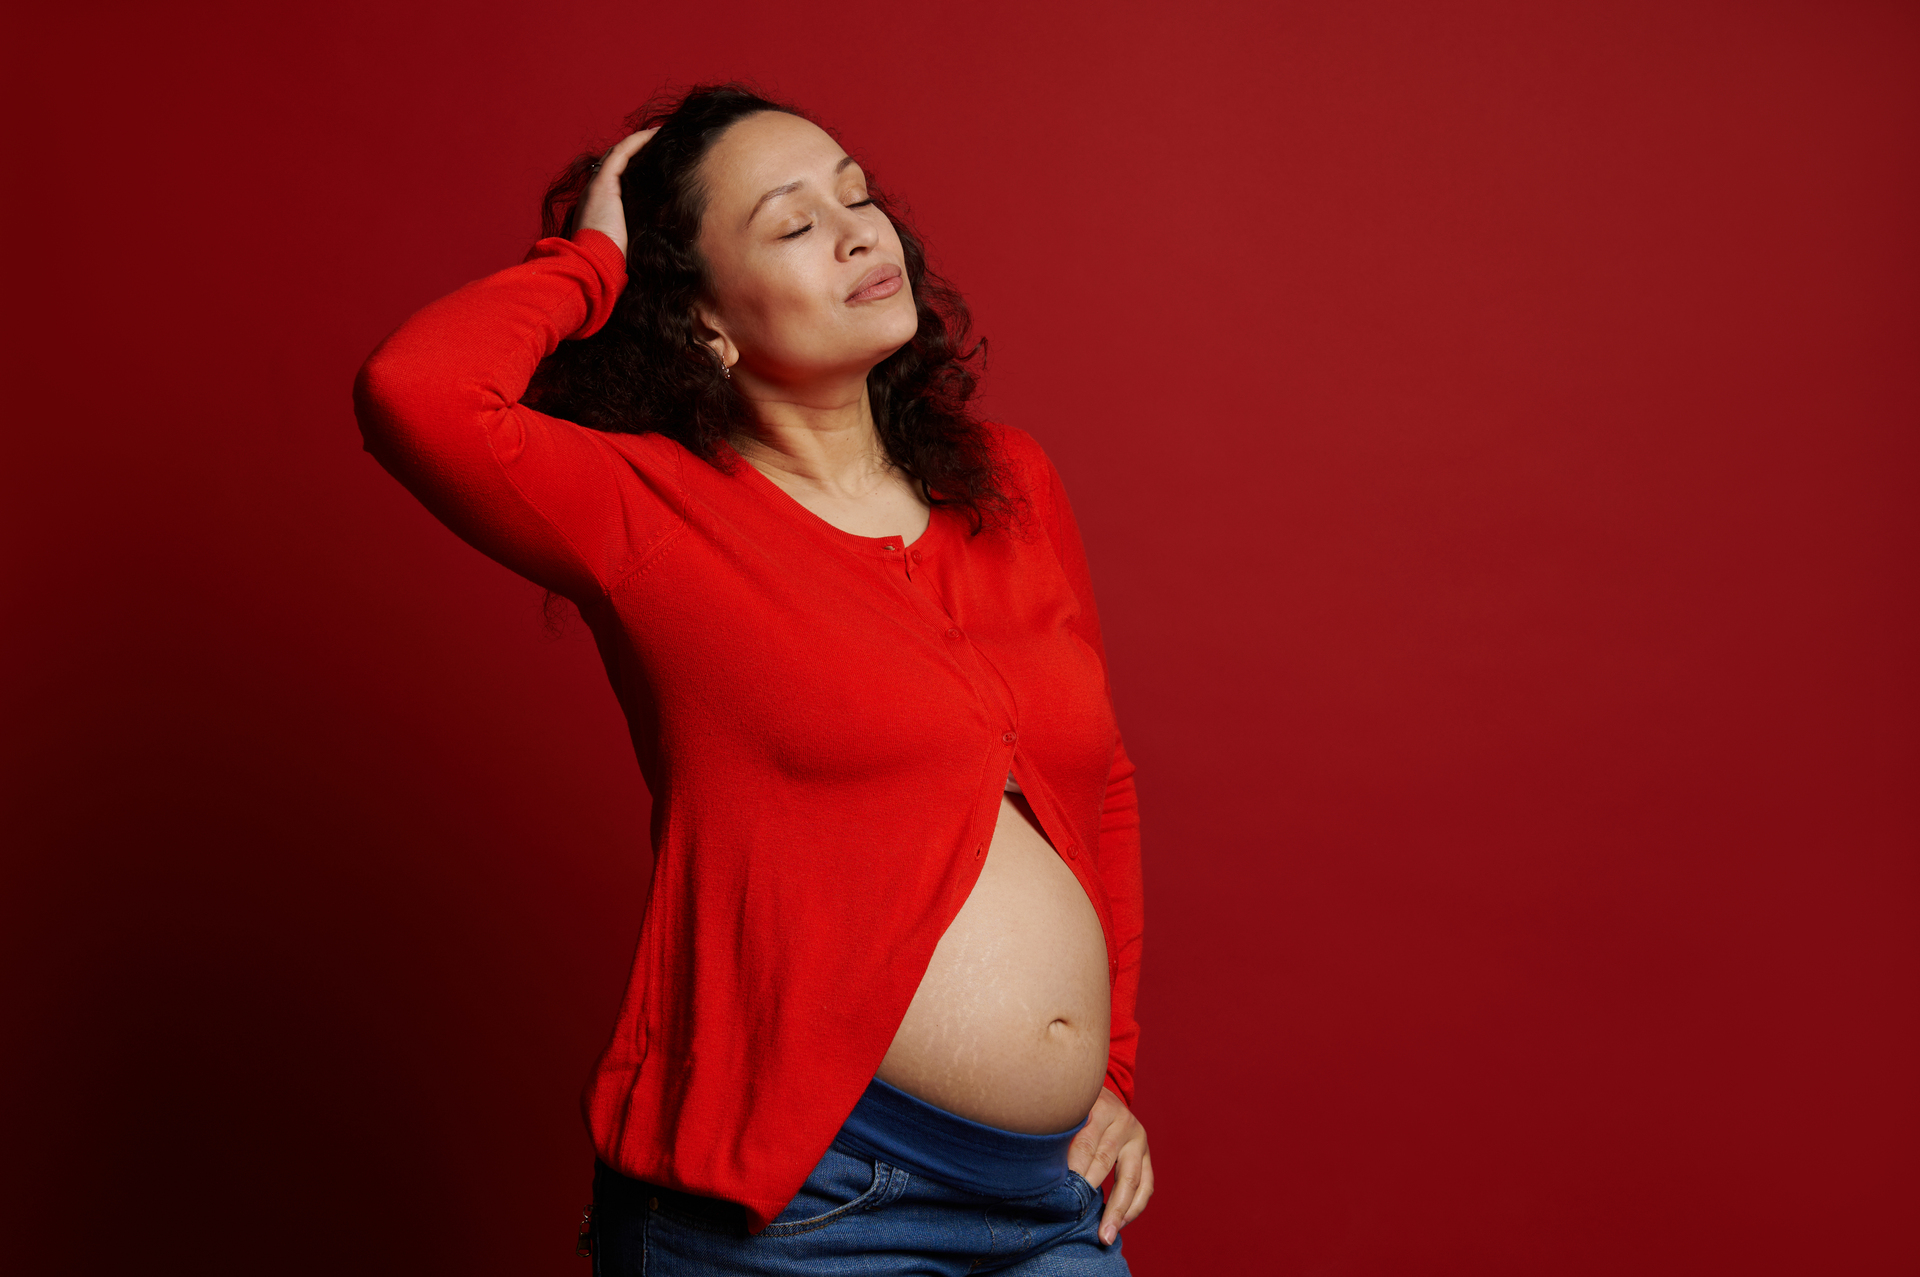 Na tym obrazku widzimy kobietę w ciąży, która jest przedstawiona na intensywnie czerwonym tle, symbolizującym siłę, pasję i determinację. Ta wizualizacja podkreśla zarówno radość, jak i wyzwania związane z byciem matką w trakcie ciąży. Obrazek ten ma na celu odkrycie różnorodnych emocji, jakie towarzyszą temu szczególnemu okresowi życia, oraz podkreślenie piękna i wyjątkowości macierzyństwa